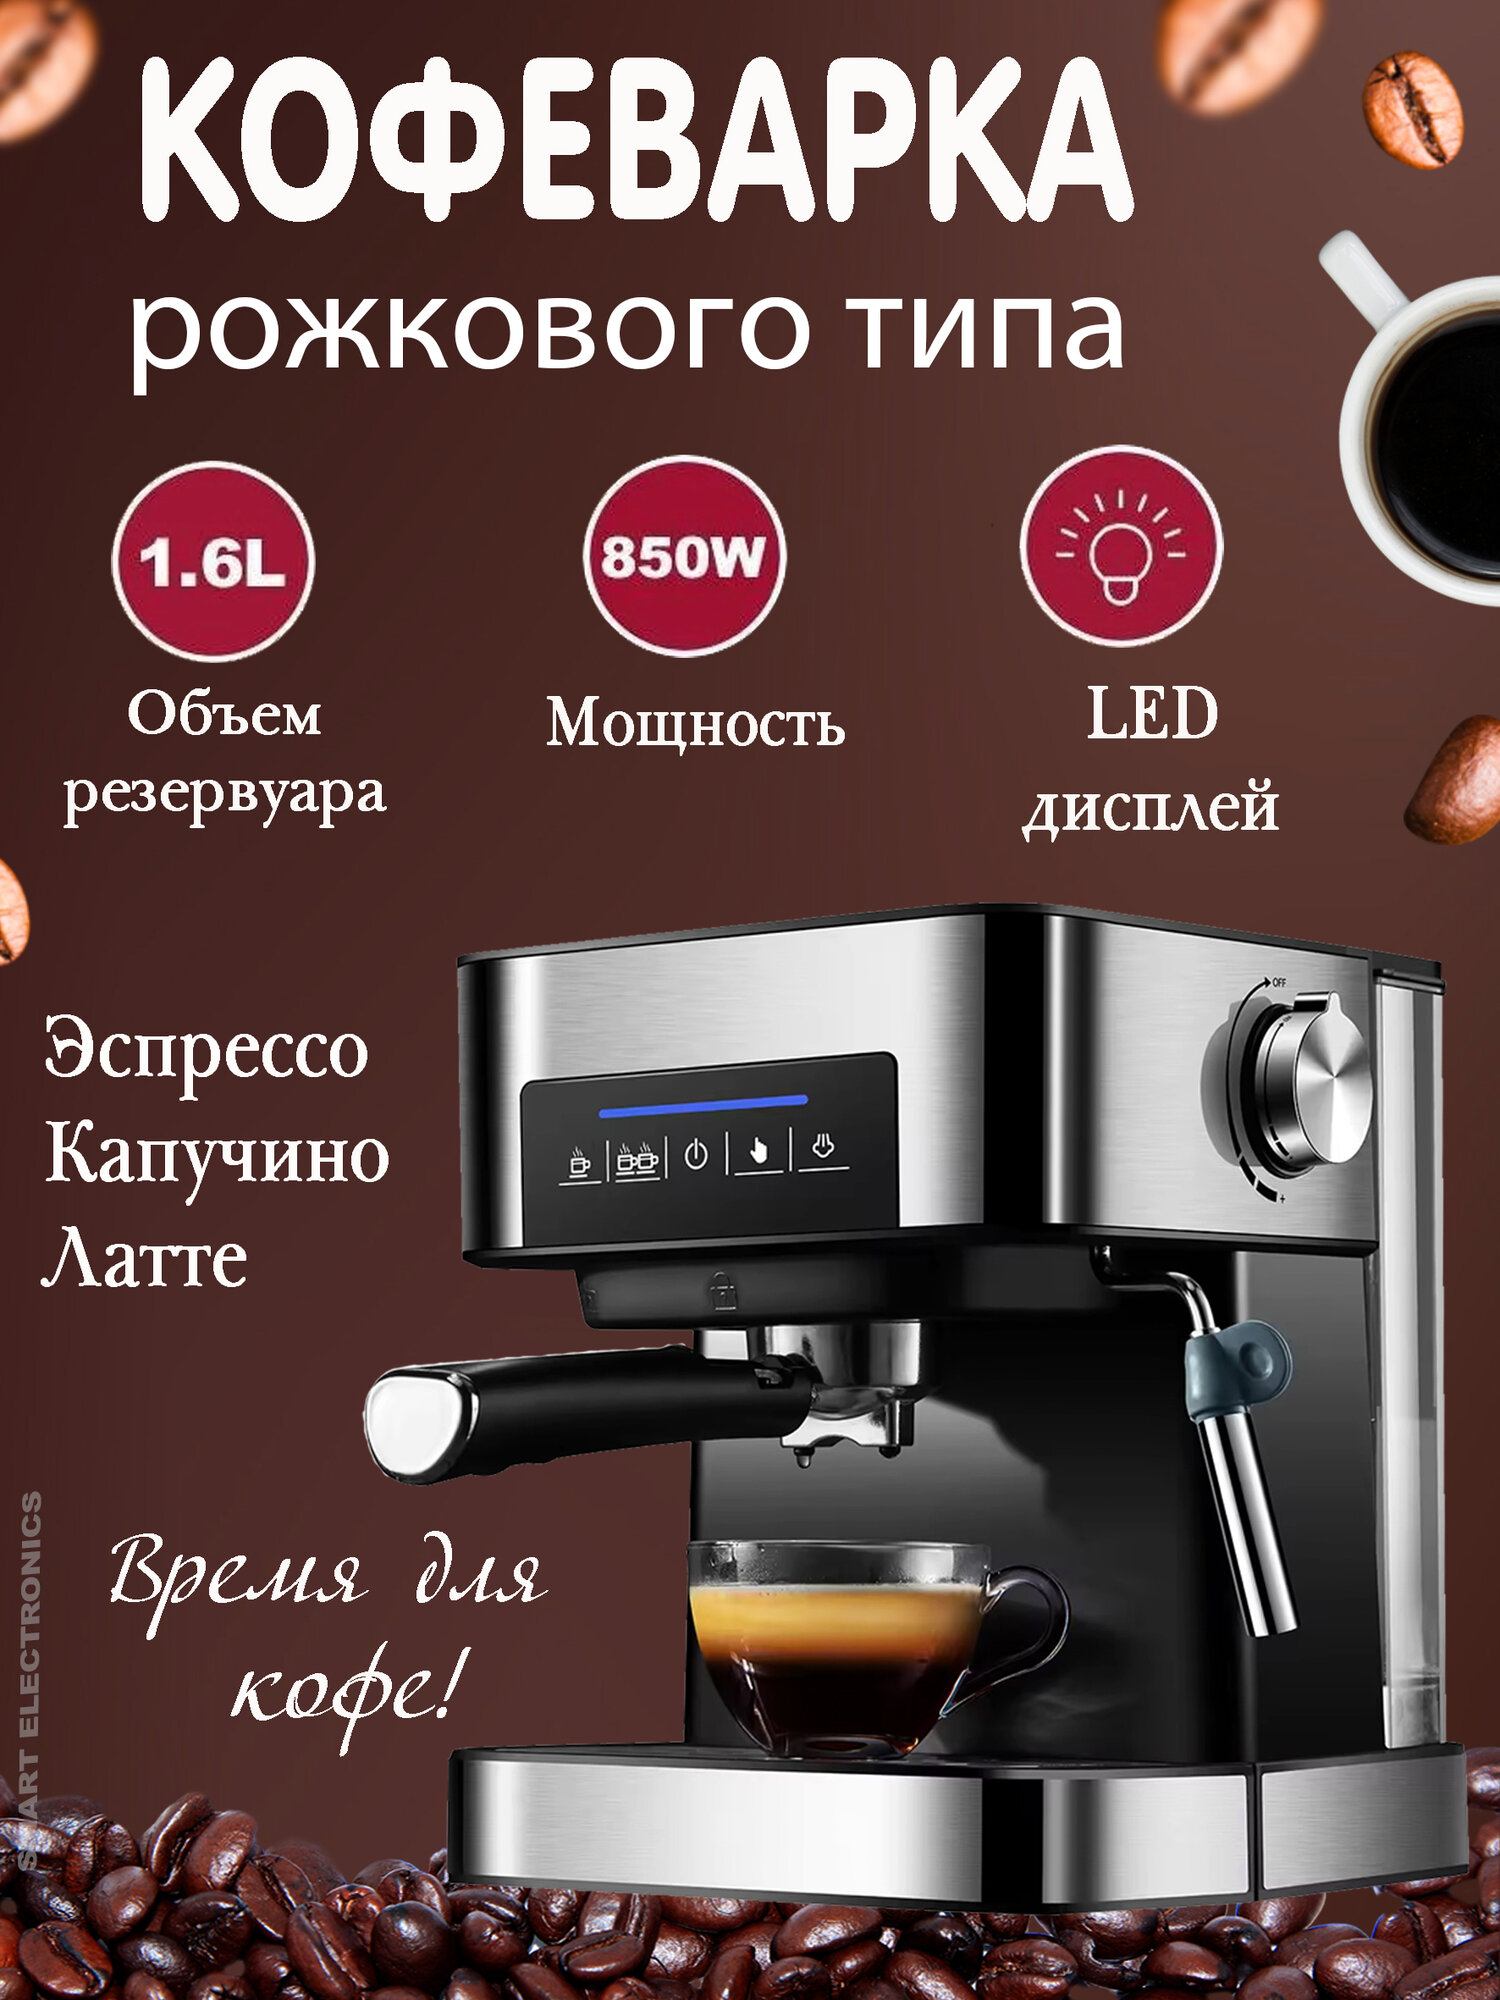 Кофеварка, кофеварка рожковая с сенсорным управлением, LED дисплей, серебристо-черный